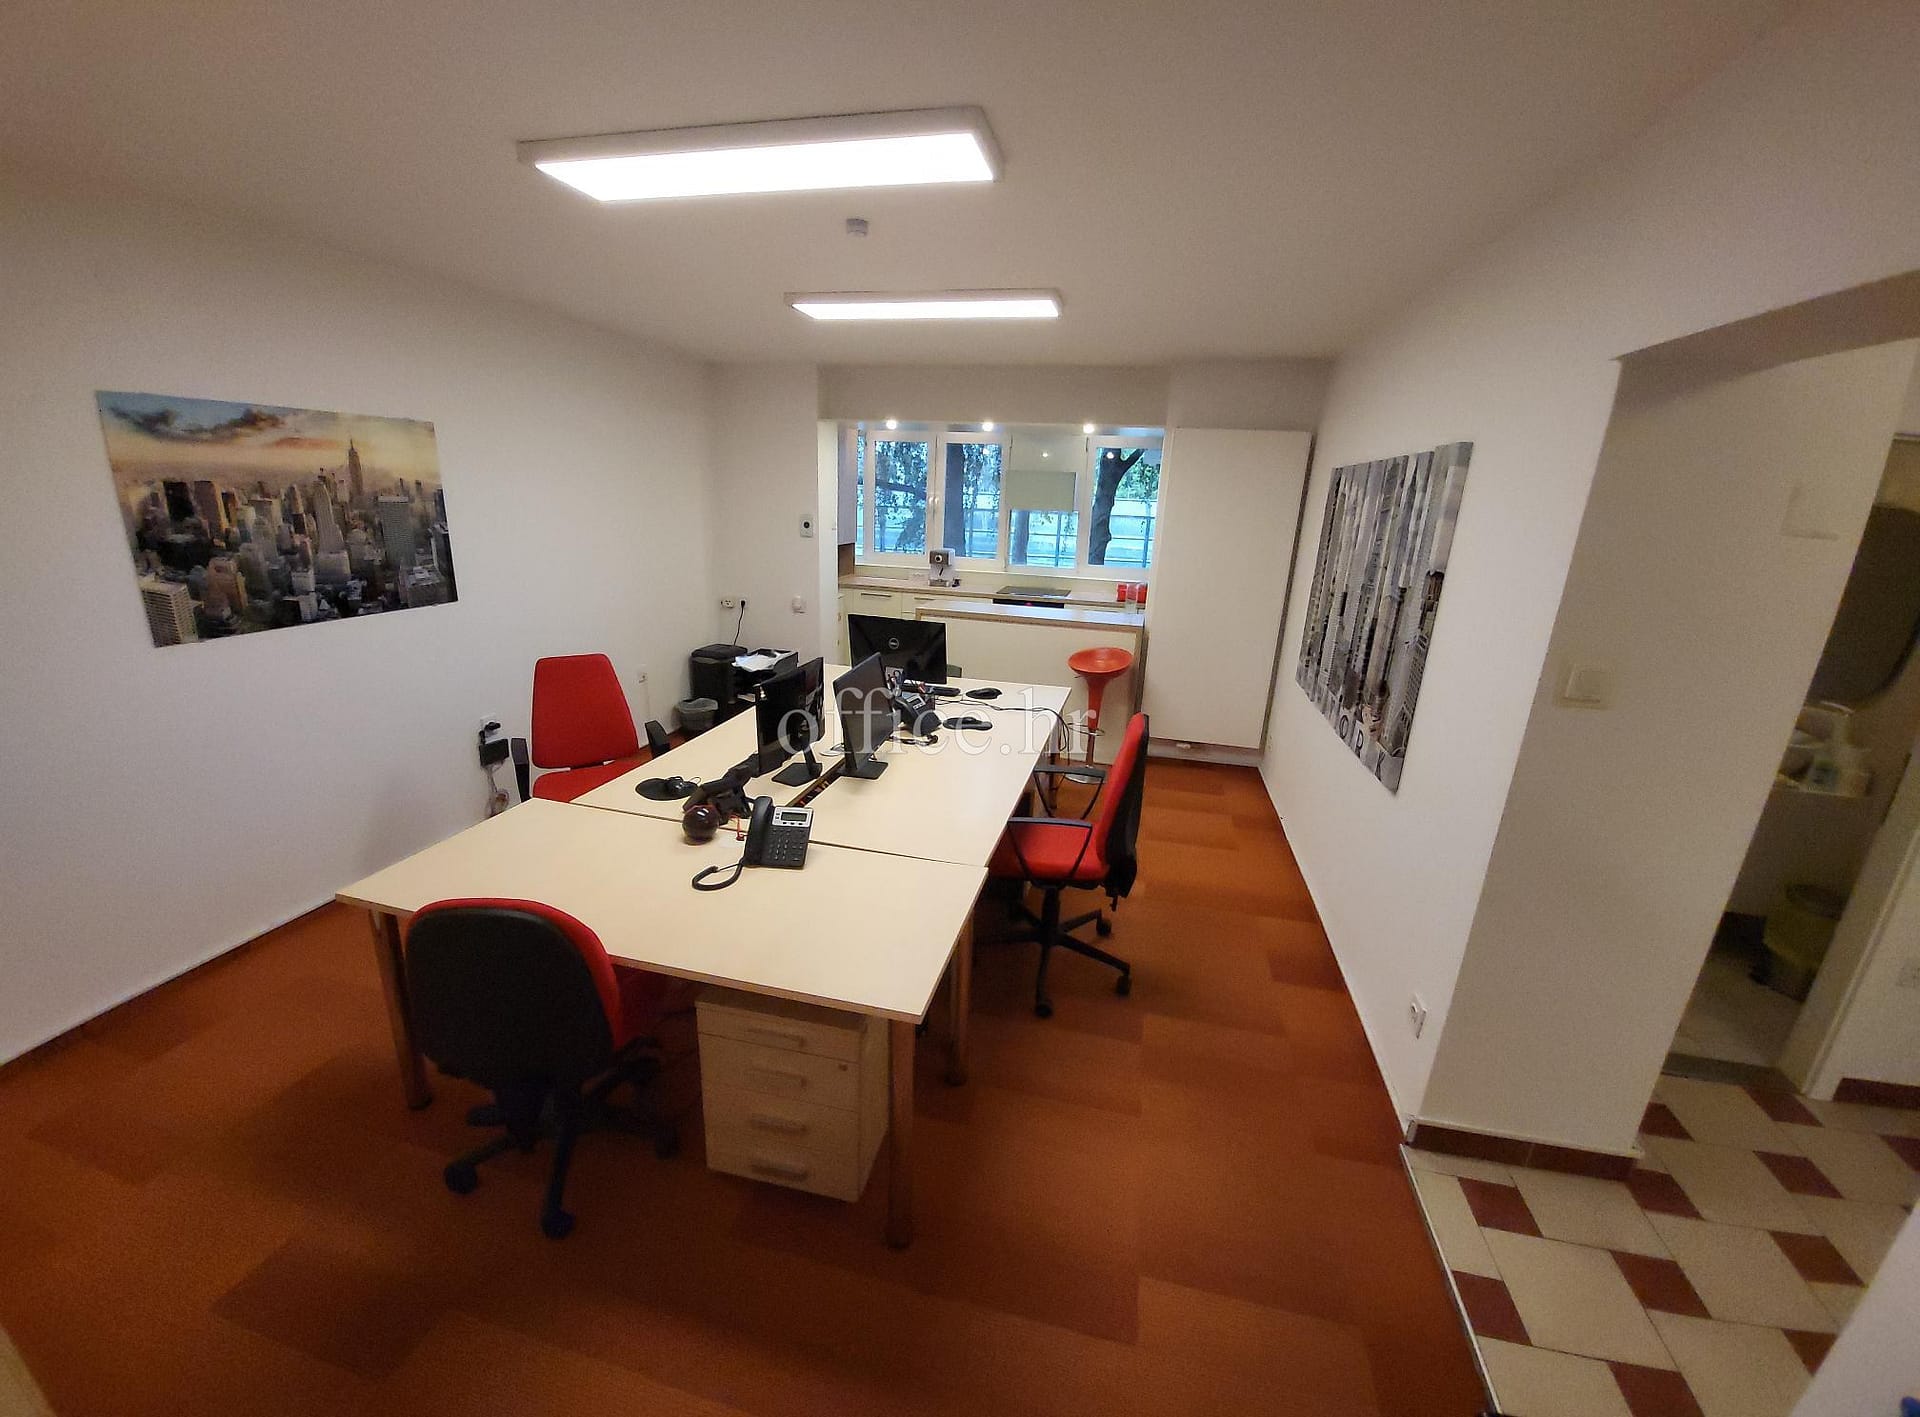 Novi Zagreb, Savski gaj, 3-room office, 70 m2, 1st floor, renovated